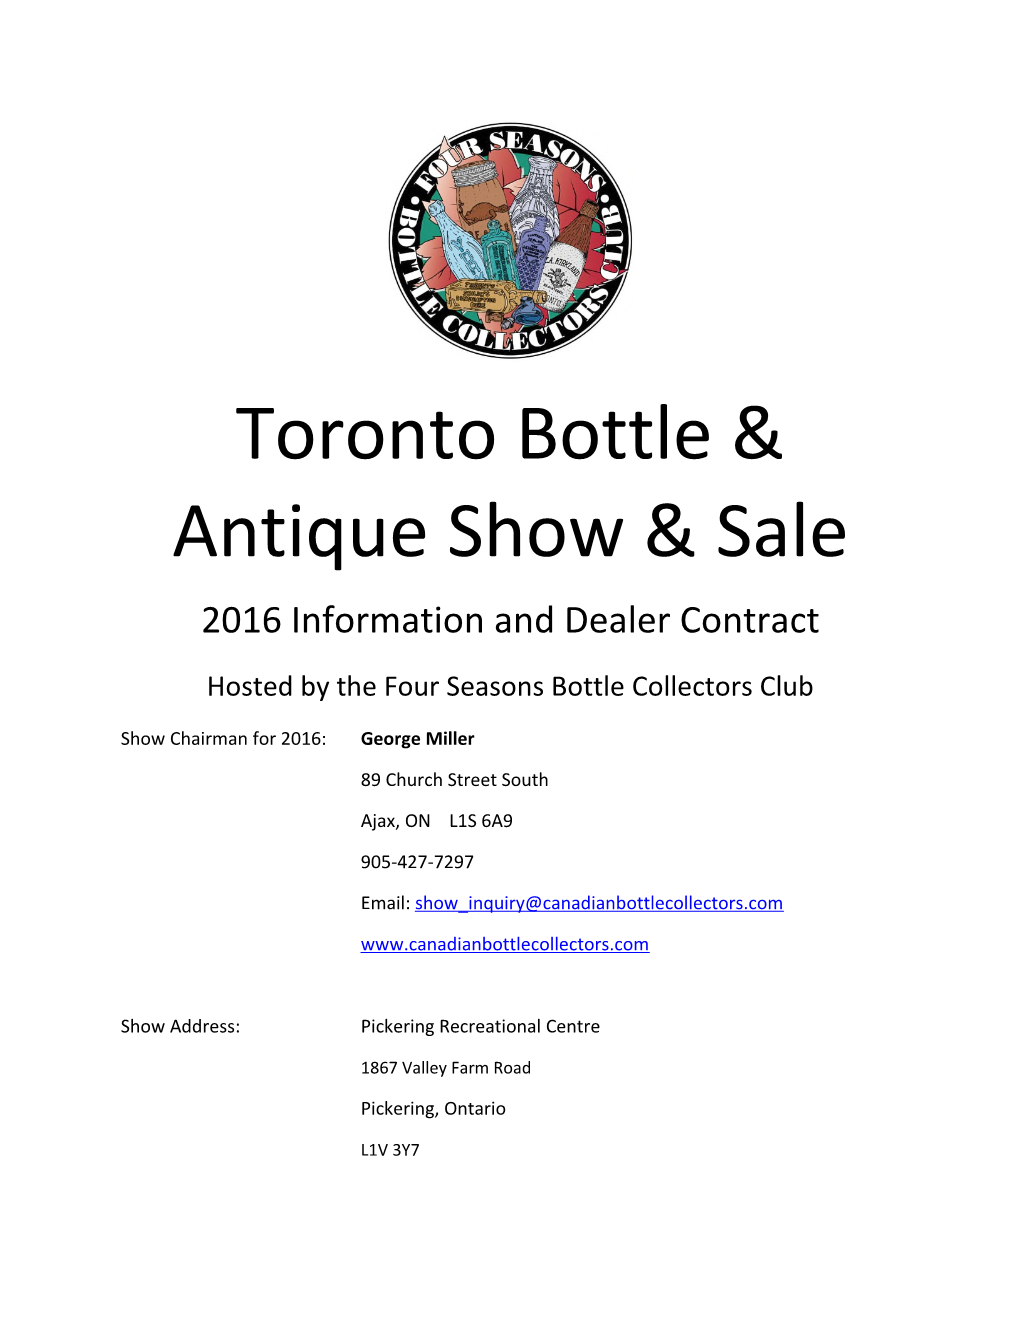 Toronto Bottle & Antique Show & Sale